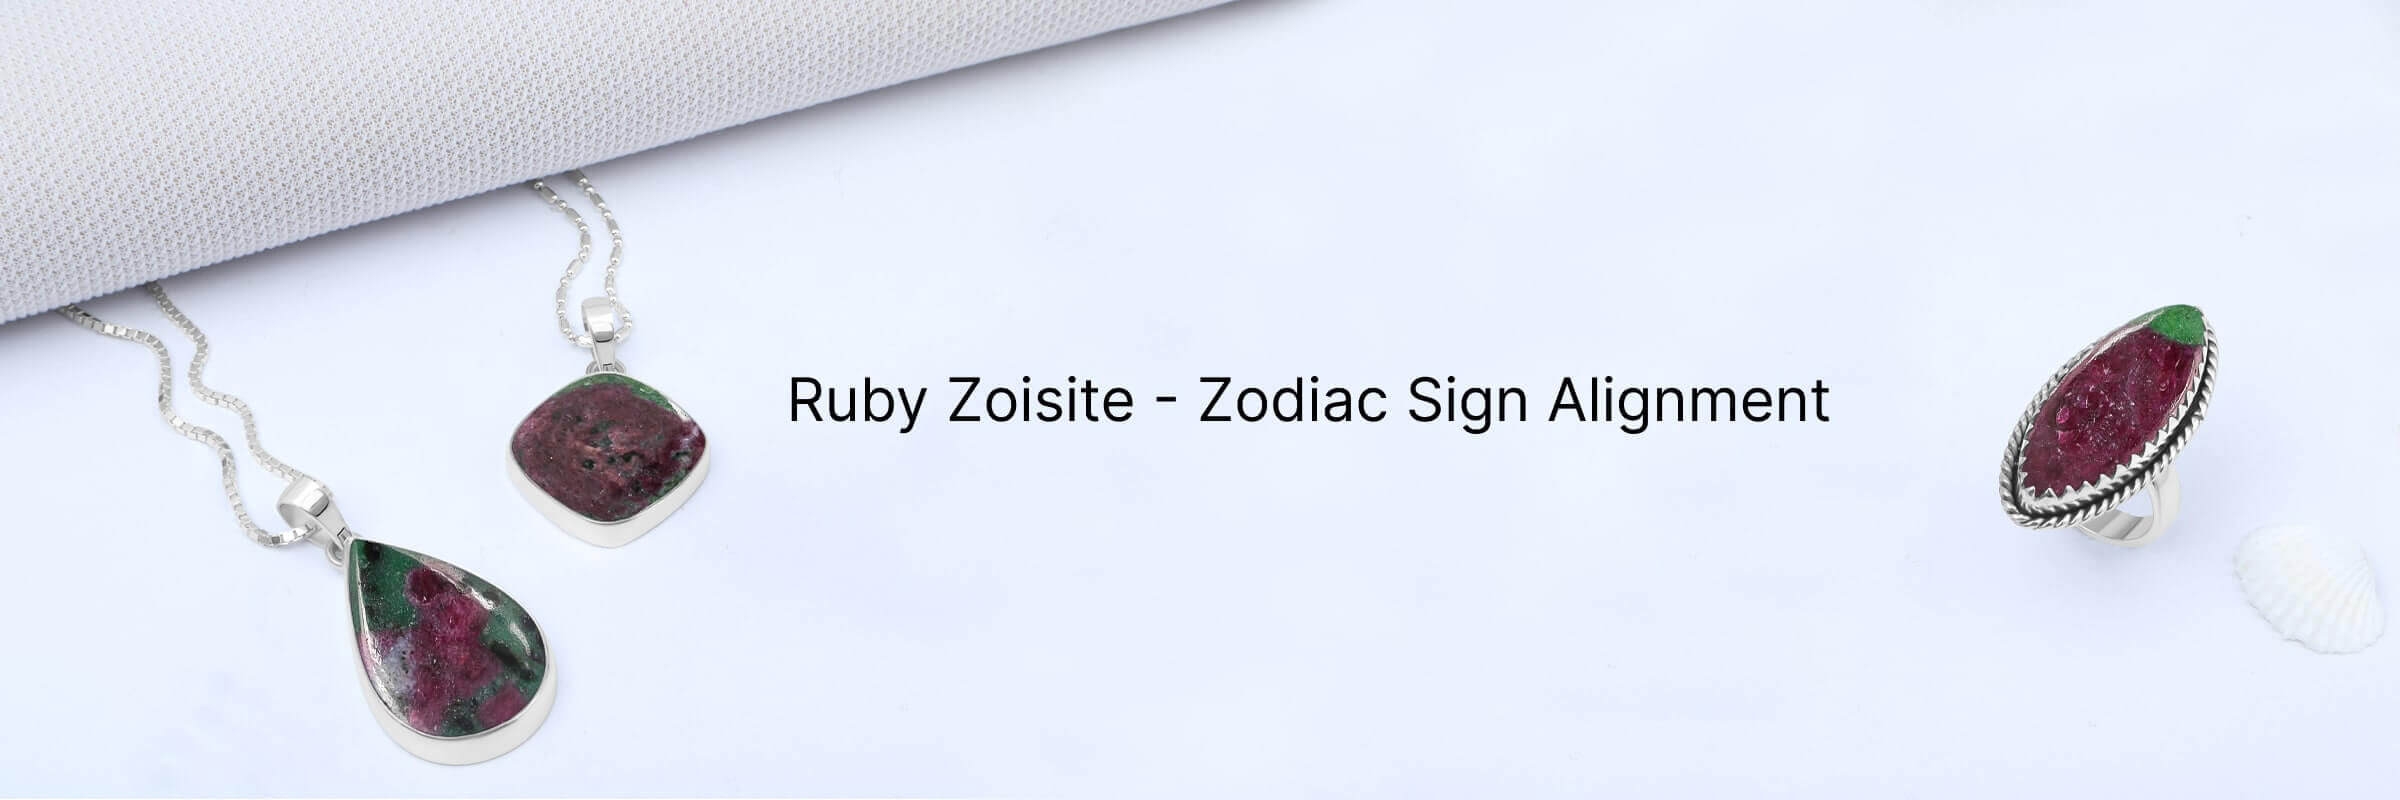 Zodiac Sign of Ruby Zoisite stone